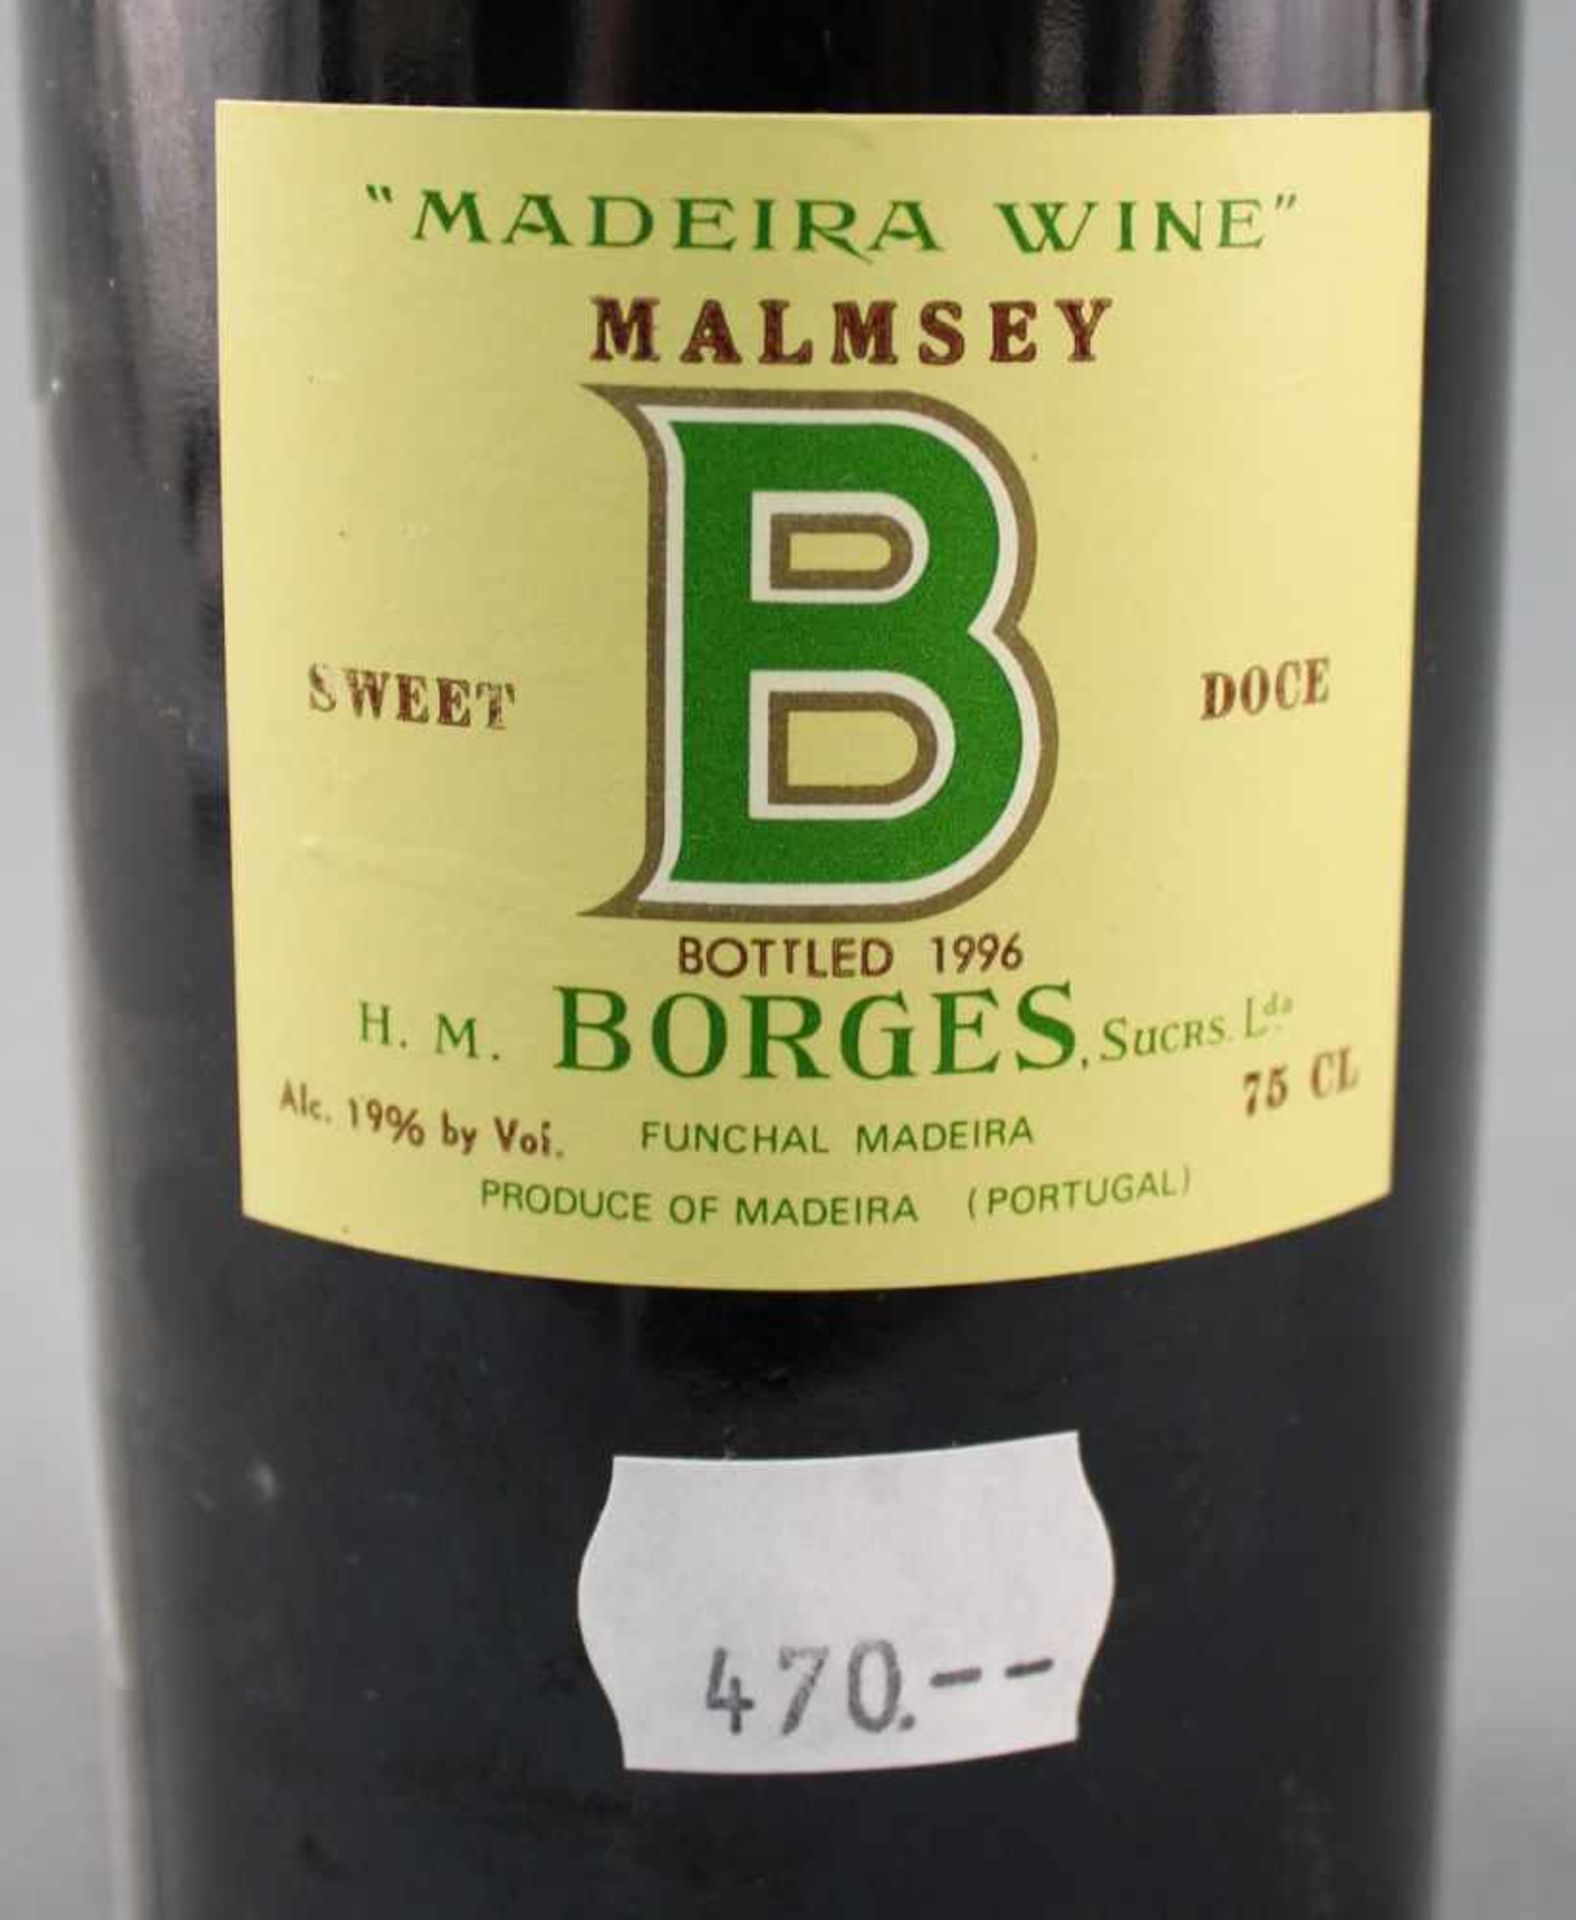 M 1927 Madeira Wine, Malmsey, Sweet Doce, BORGES. Bottled 1996.Eine ganze Flasche. 750 ml. 19 % Vol. - Bild 5 aus 9